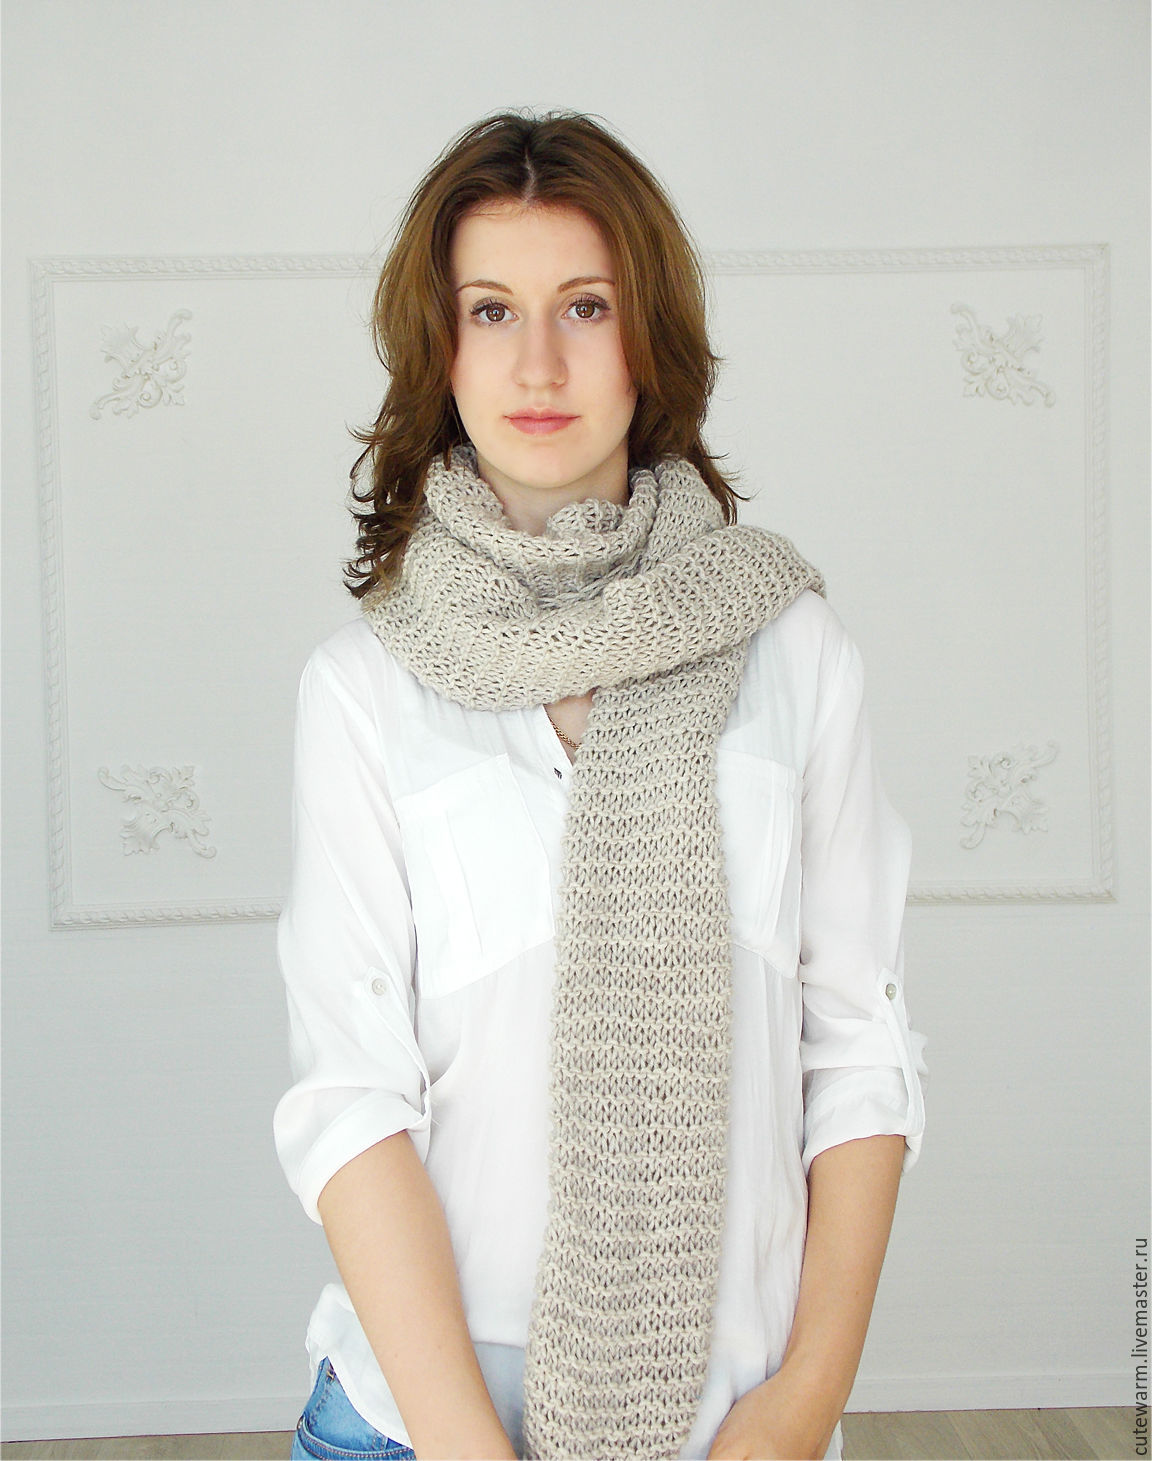 Женская одежда LALIS Plus size. Купить в интернет-магазине бородино-молодежка.рф с доставкой по Москве.